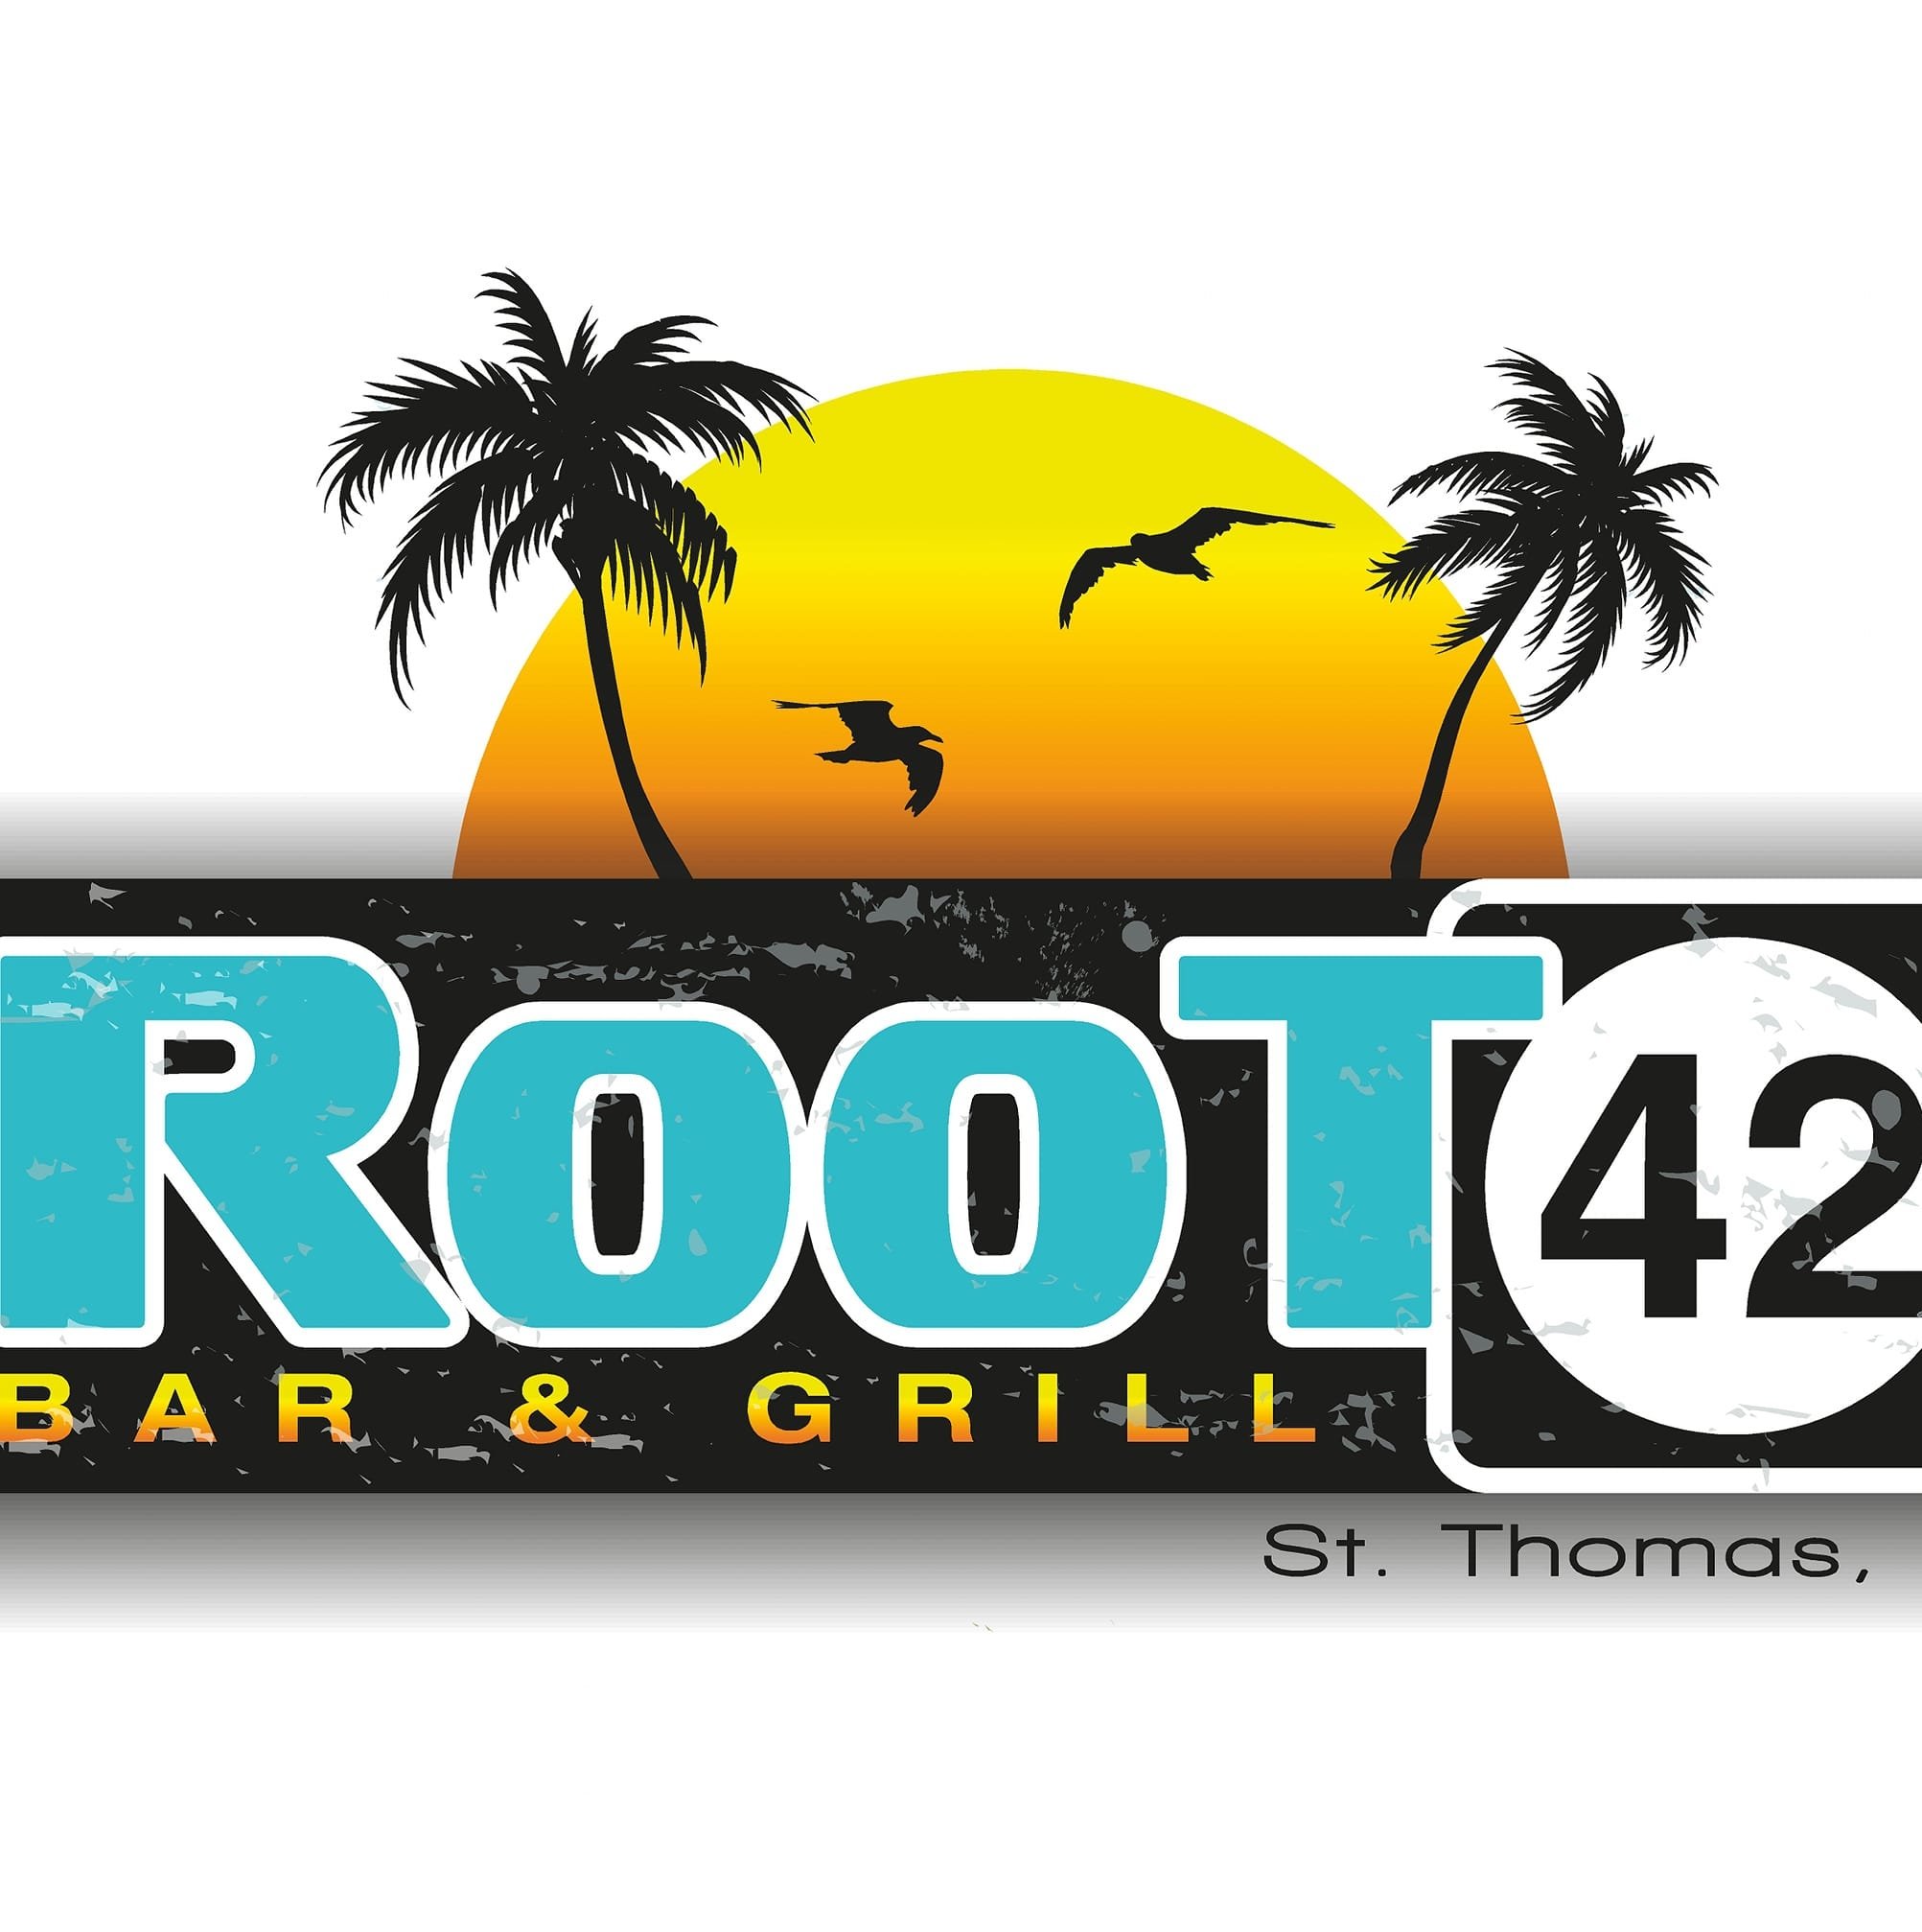 root42 logo.jpg